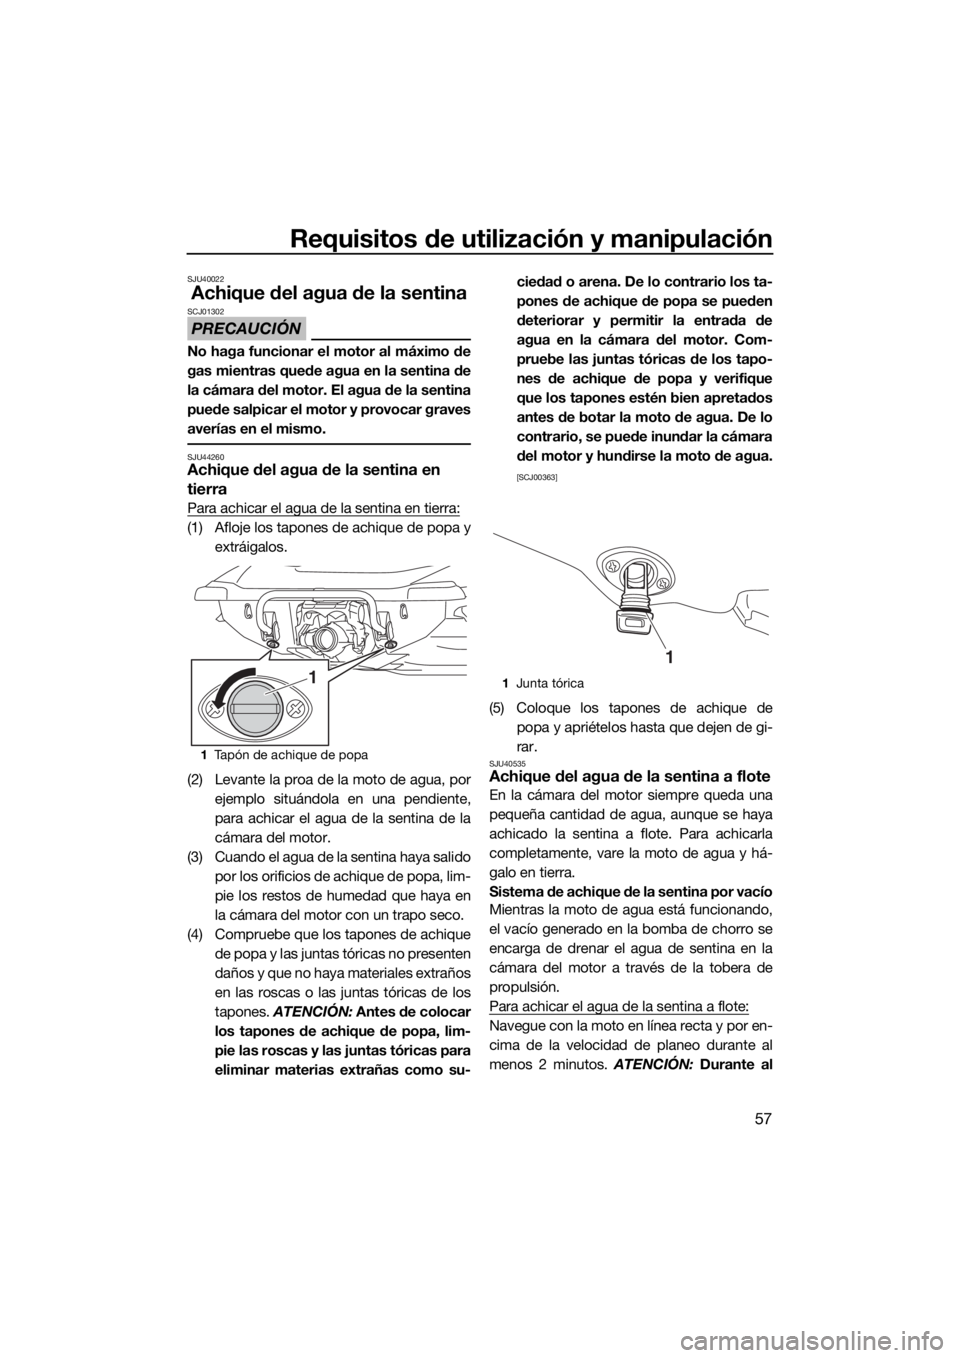 YAMAHA VX 2020  Manuale de Empleo (in Spanish) Requisitos de utilización y manipulación
57
SJU40022
Achique del agua de la sentina
PRECAUCIÓN
SCJ01302
No haga funcionar el motor al máximo de
gas mientras quede agua en la sentina de
la cámara 